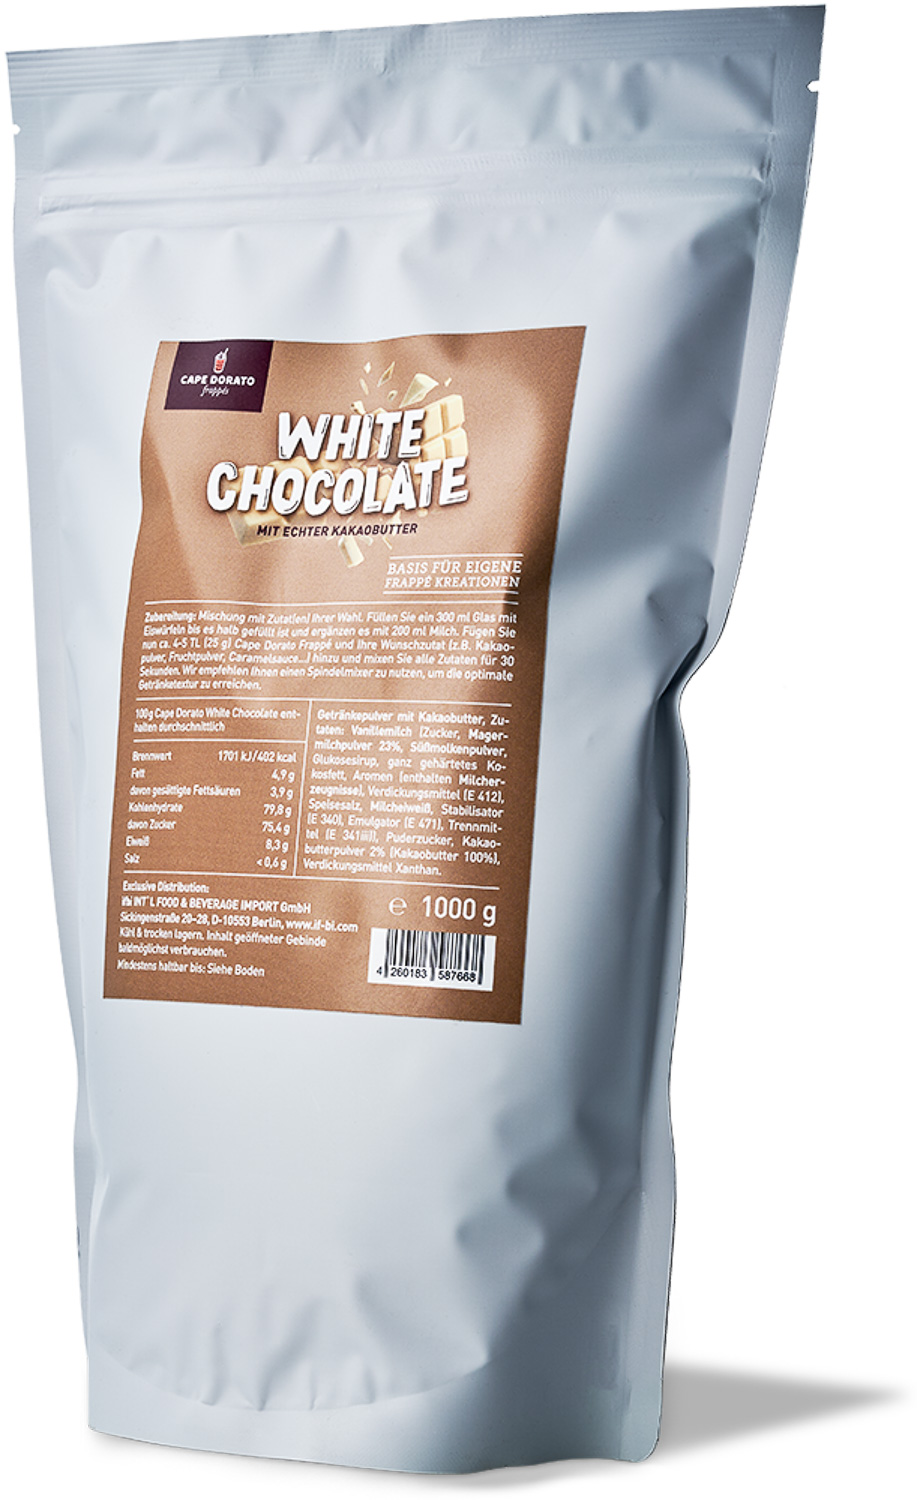 Cape Dorato - Frappé White Chocolate